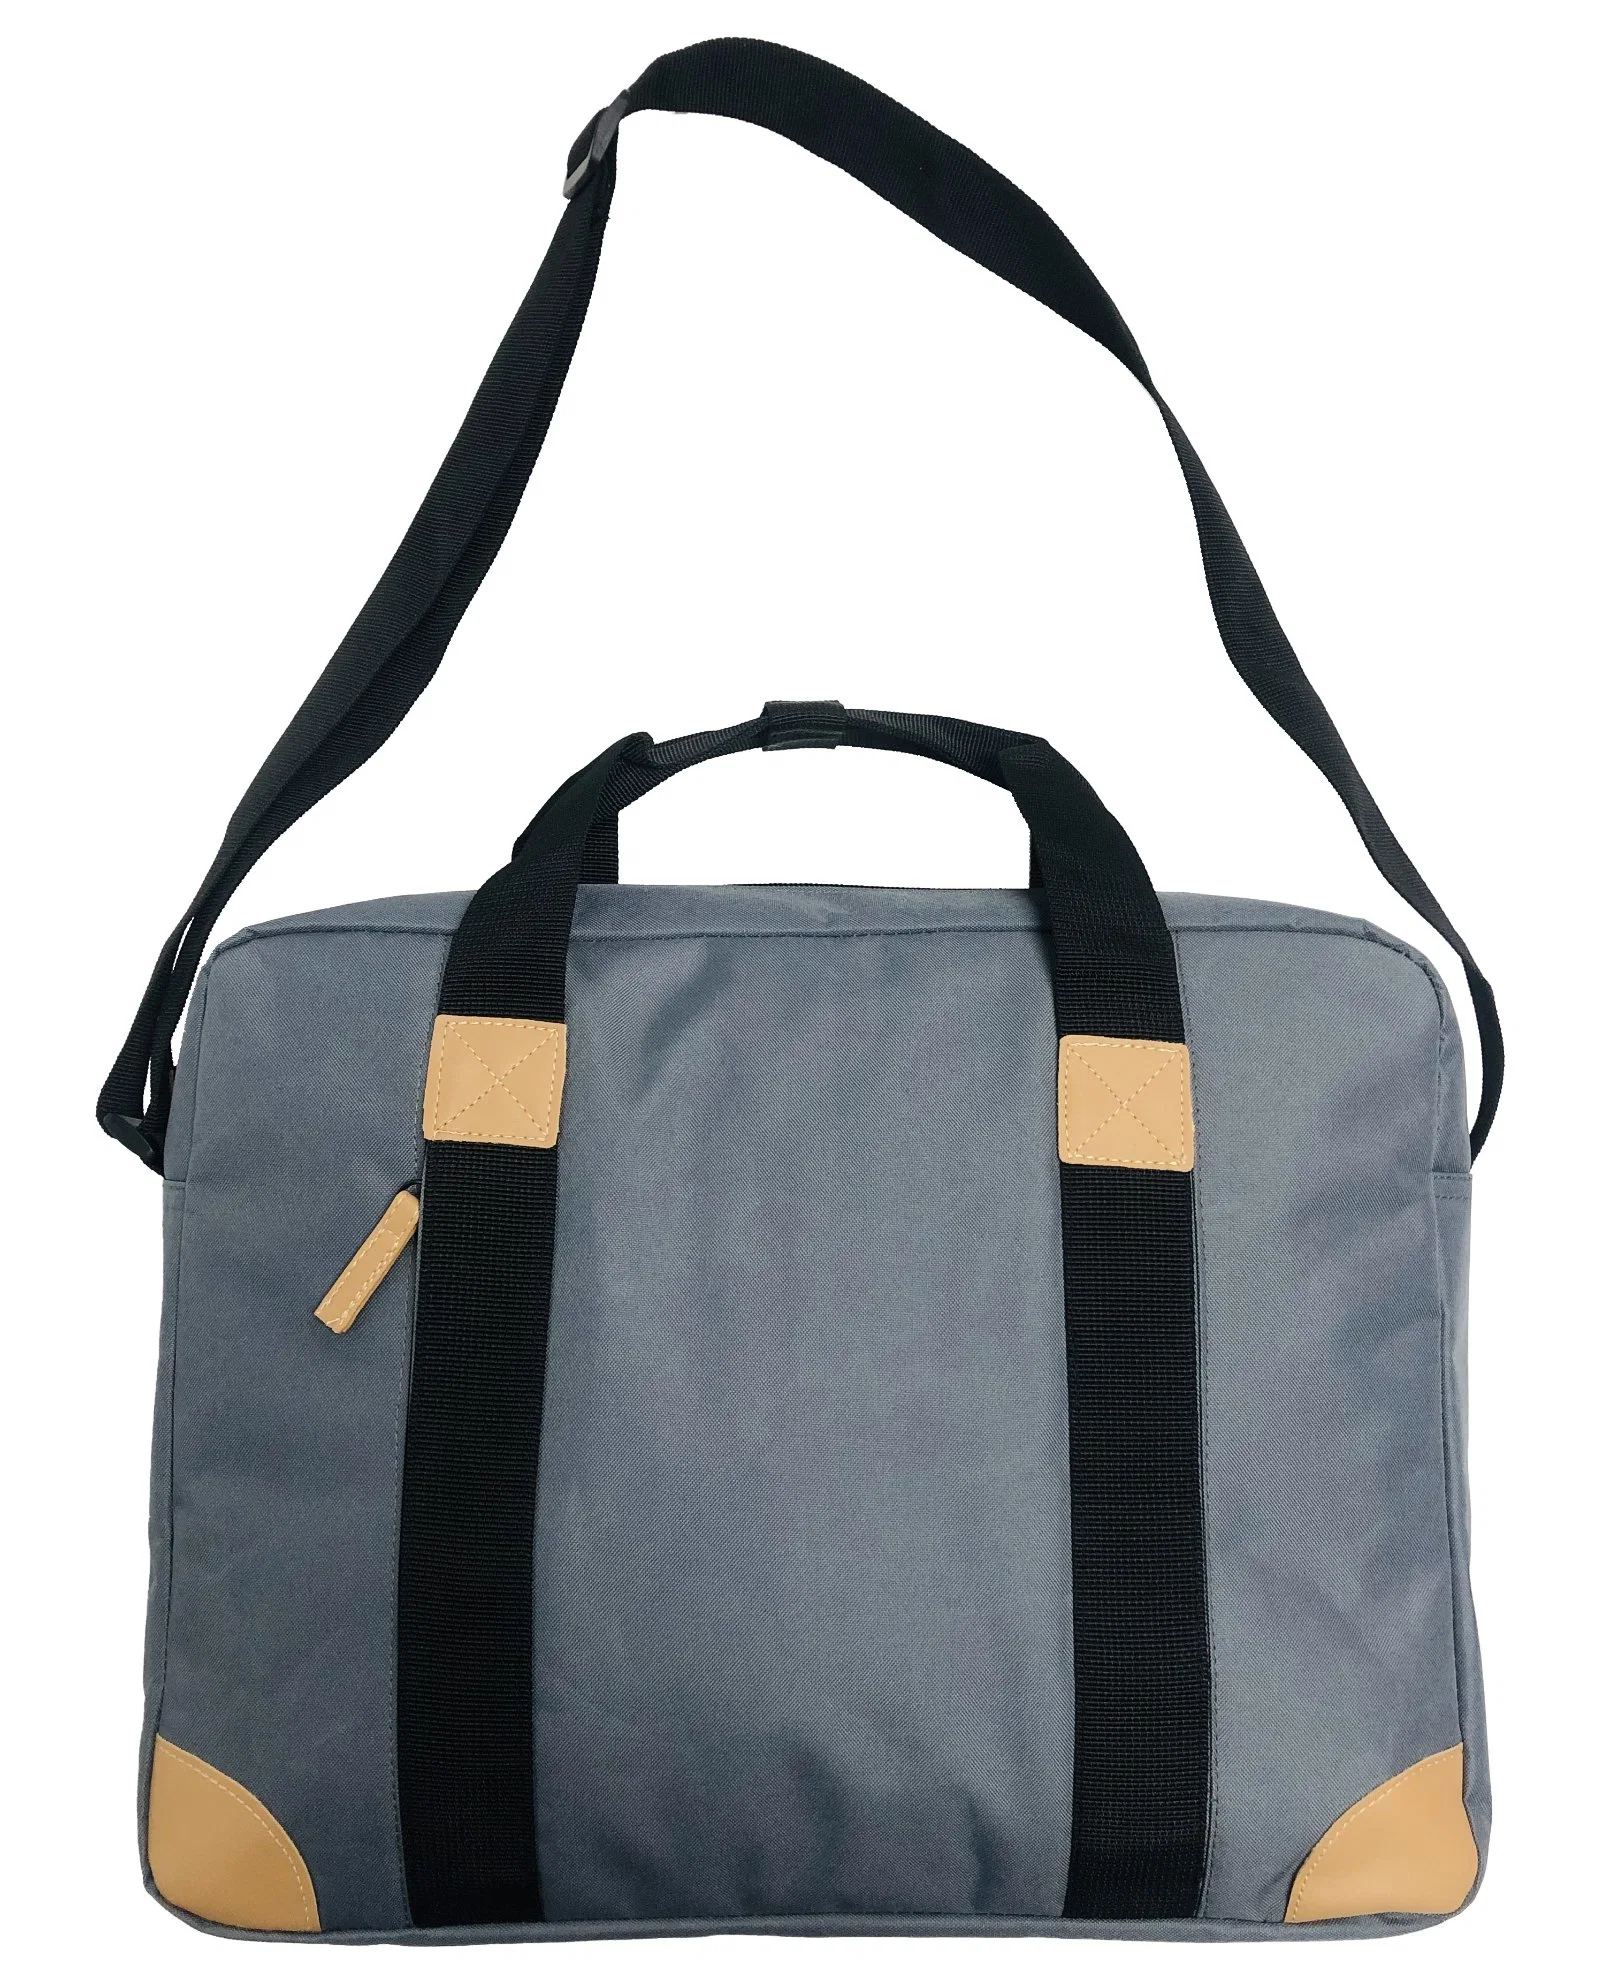 Weekend Waterproof Customized Travel Handbag Single Shoulder Duffle Bag